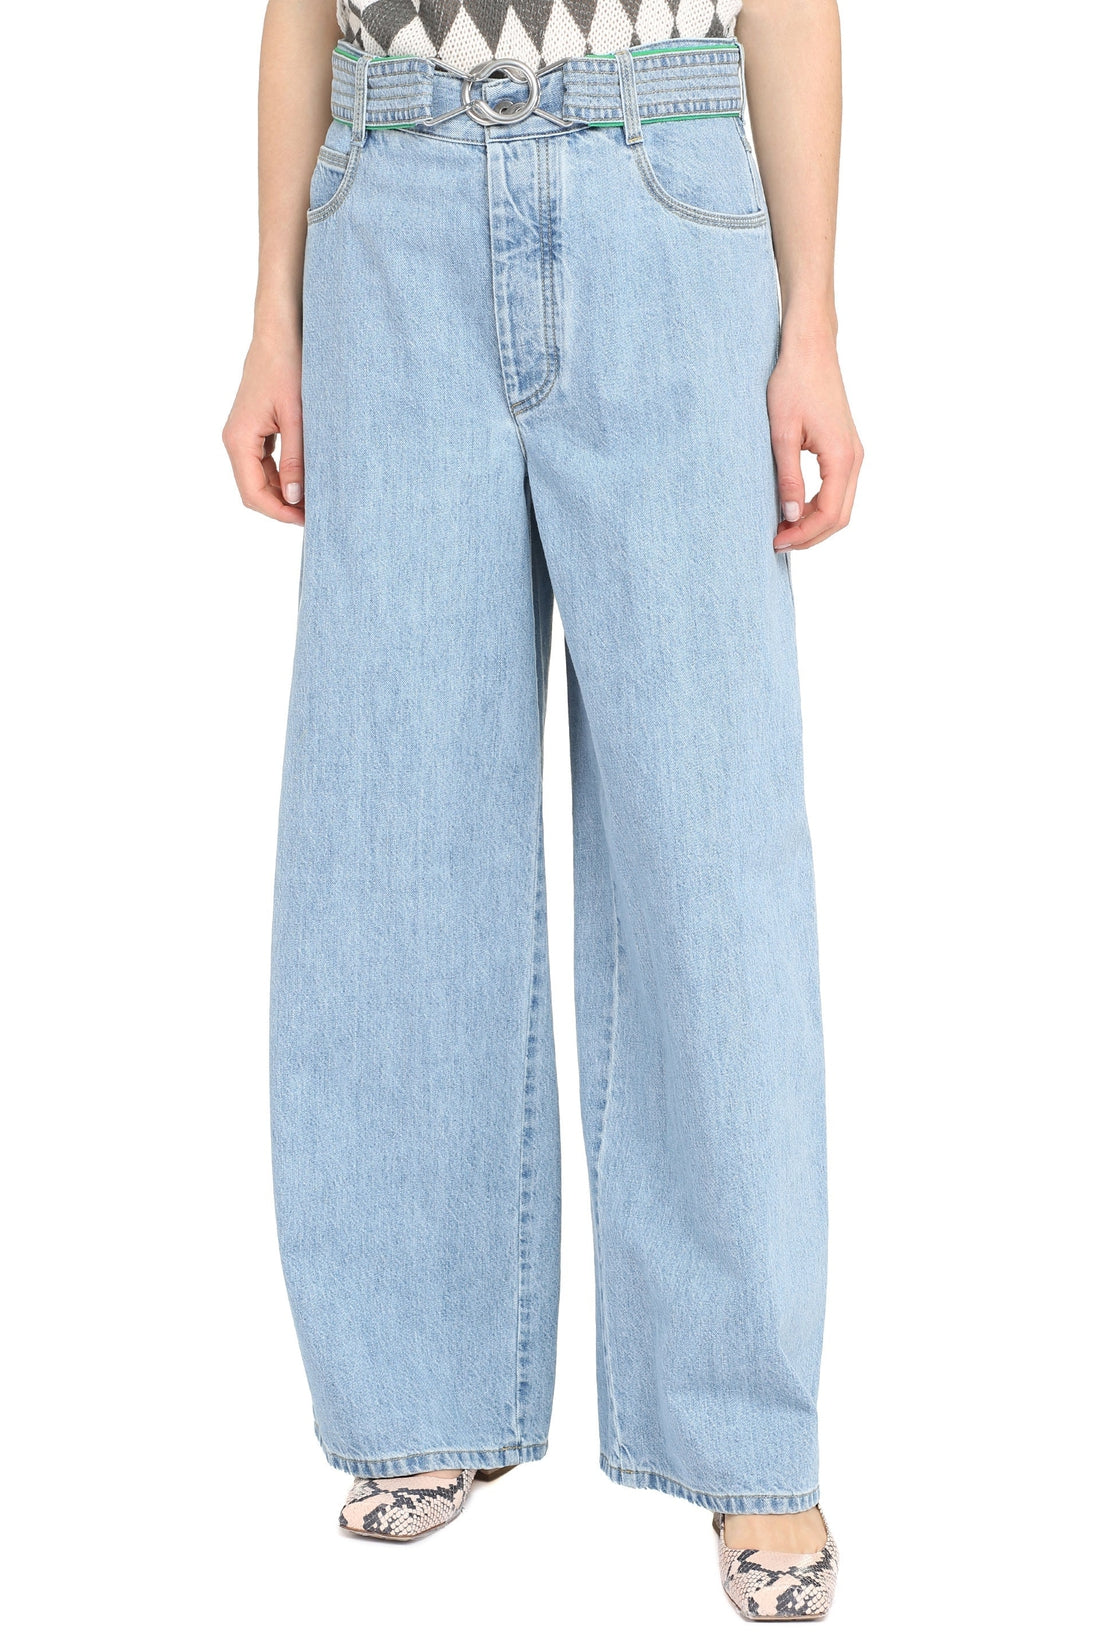 Bottega Veneta-OUTLET-SALE-Wide-leg jeans-ARCHIVIST